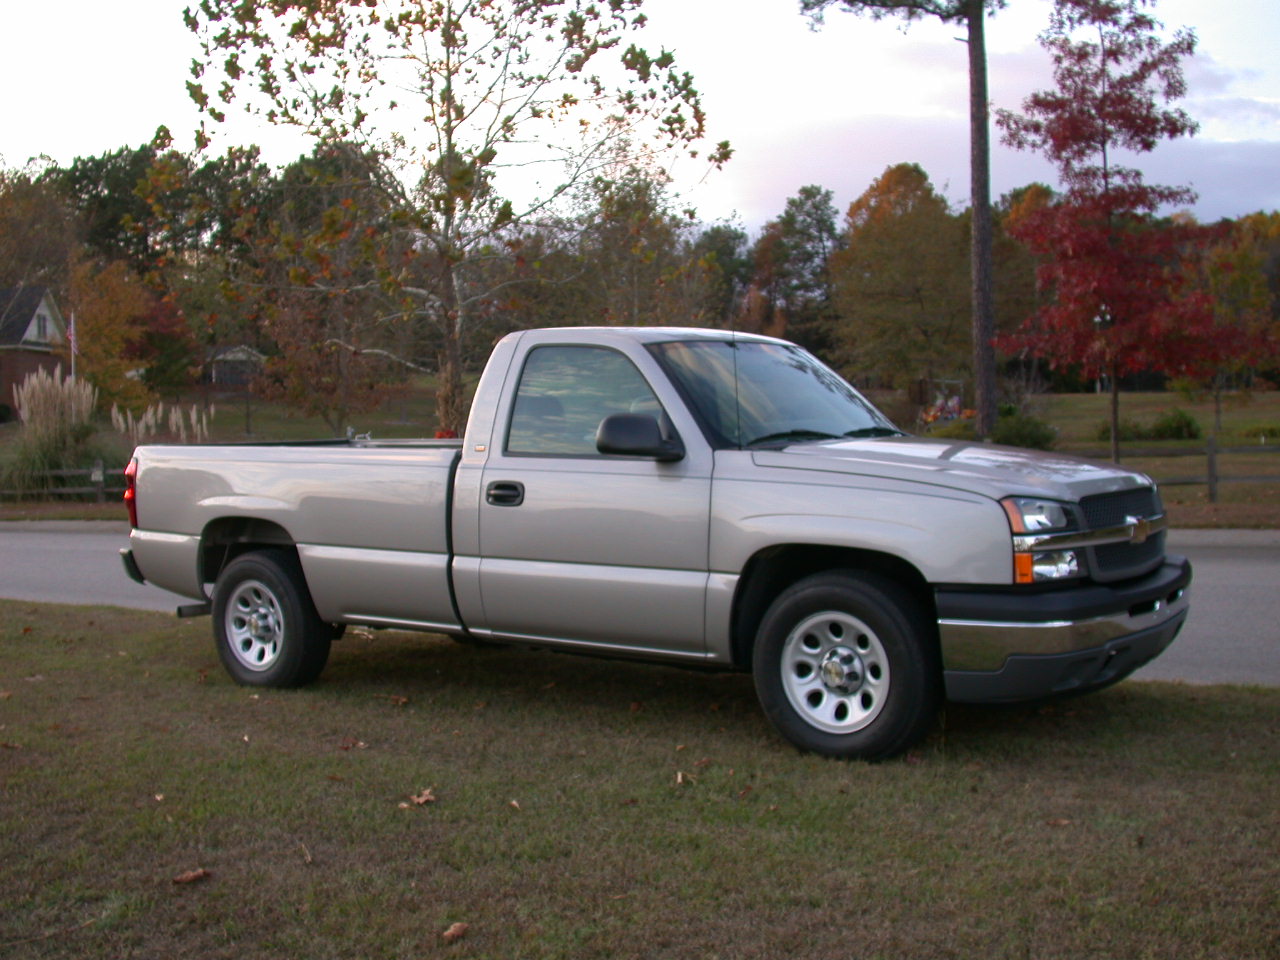 2005 Chevy Silverado Single Cab